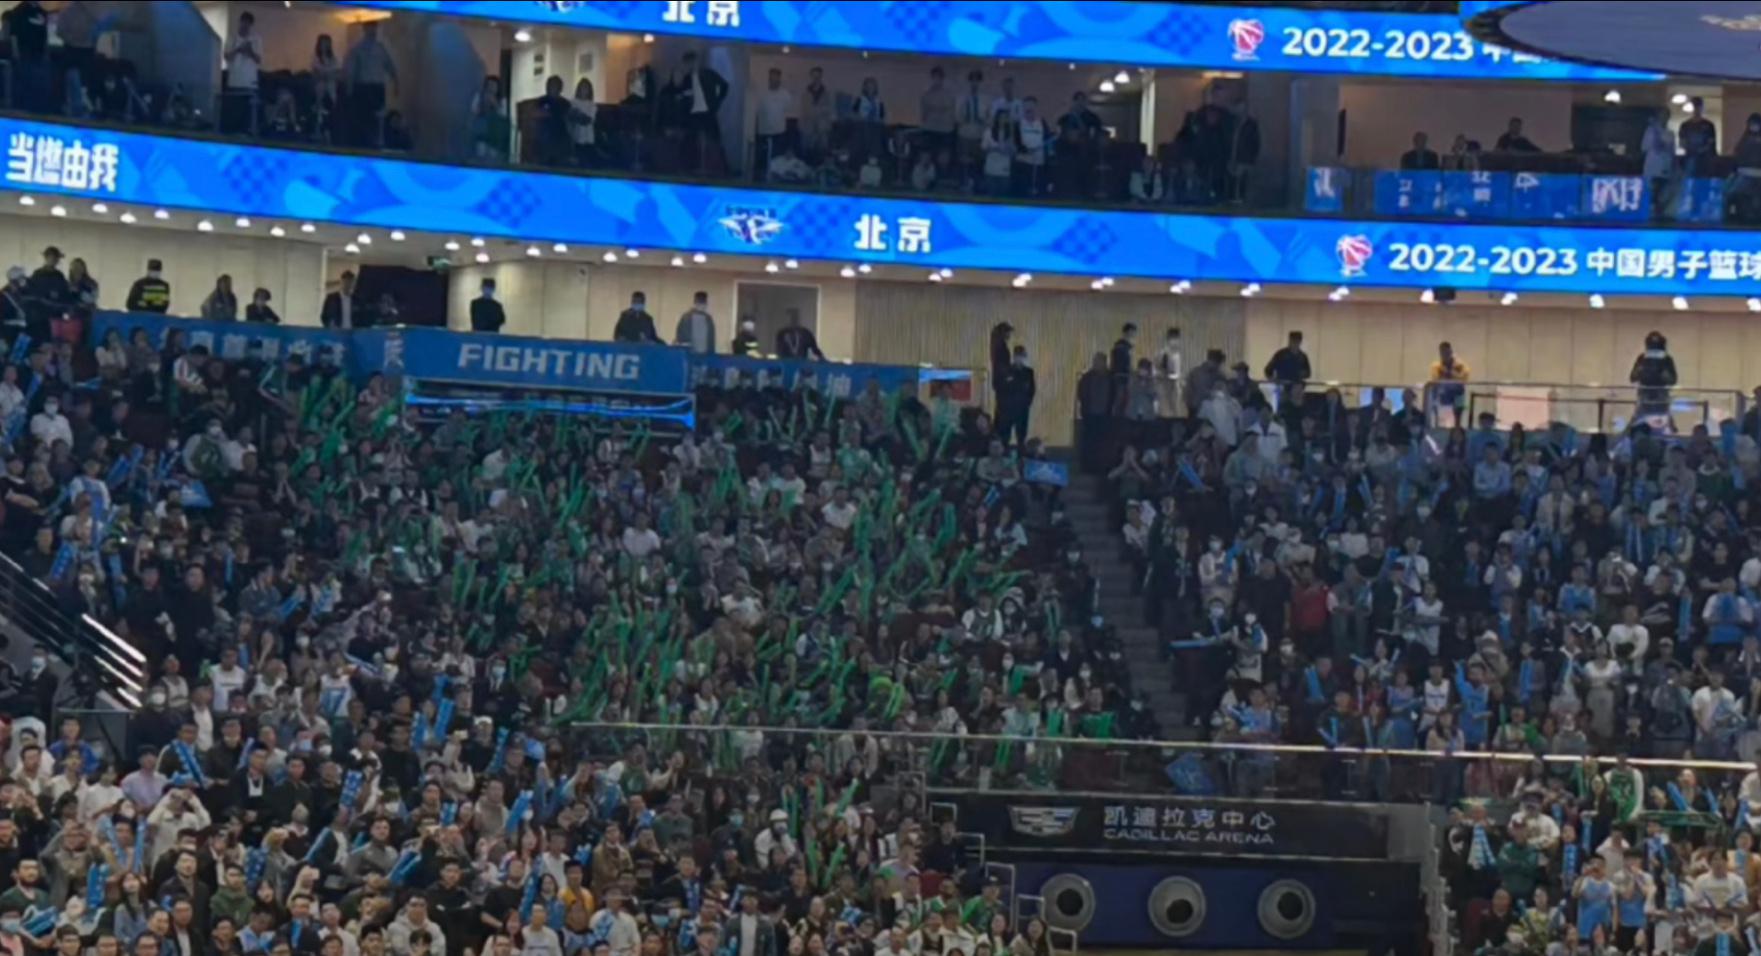 真的很难不感动北京五棵松体育馆只有这一个角是属于辽宁球迷的区域的却能在转播信号中(1)